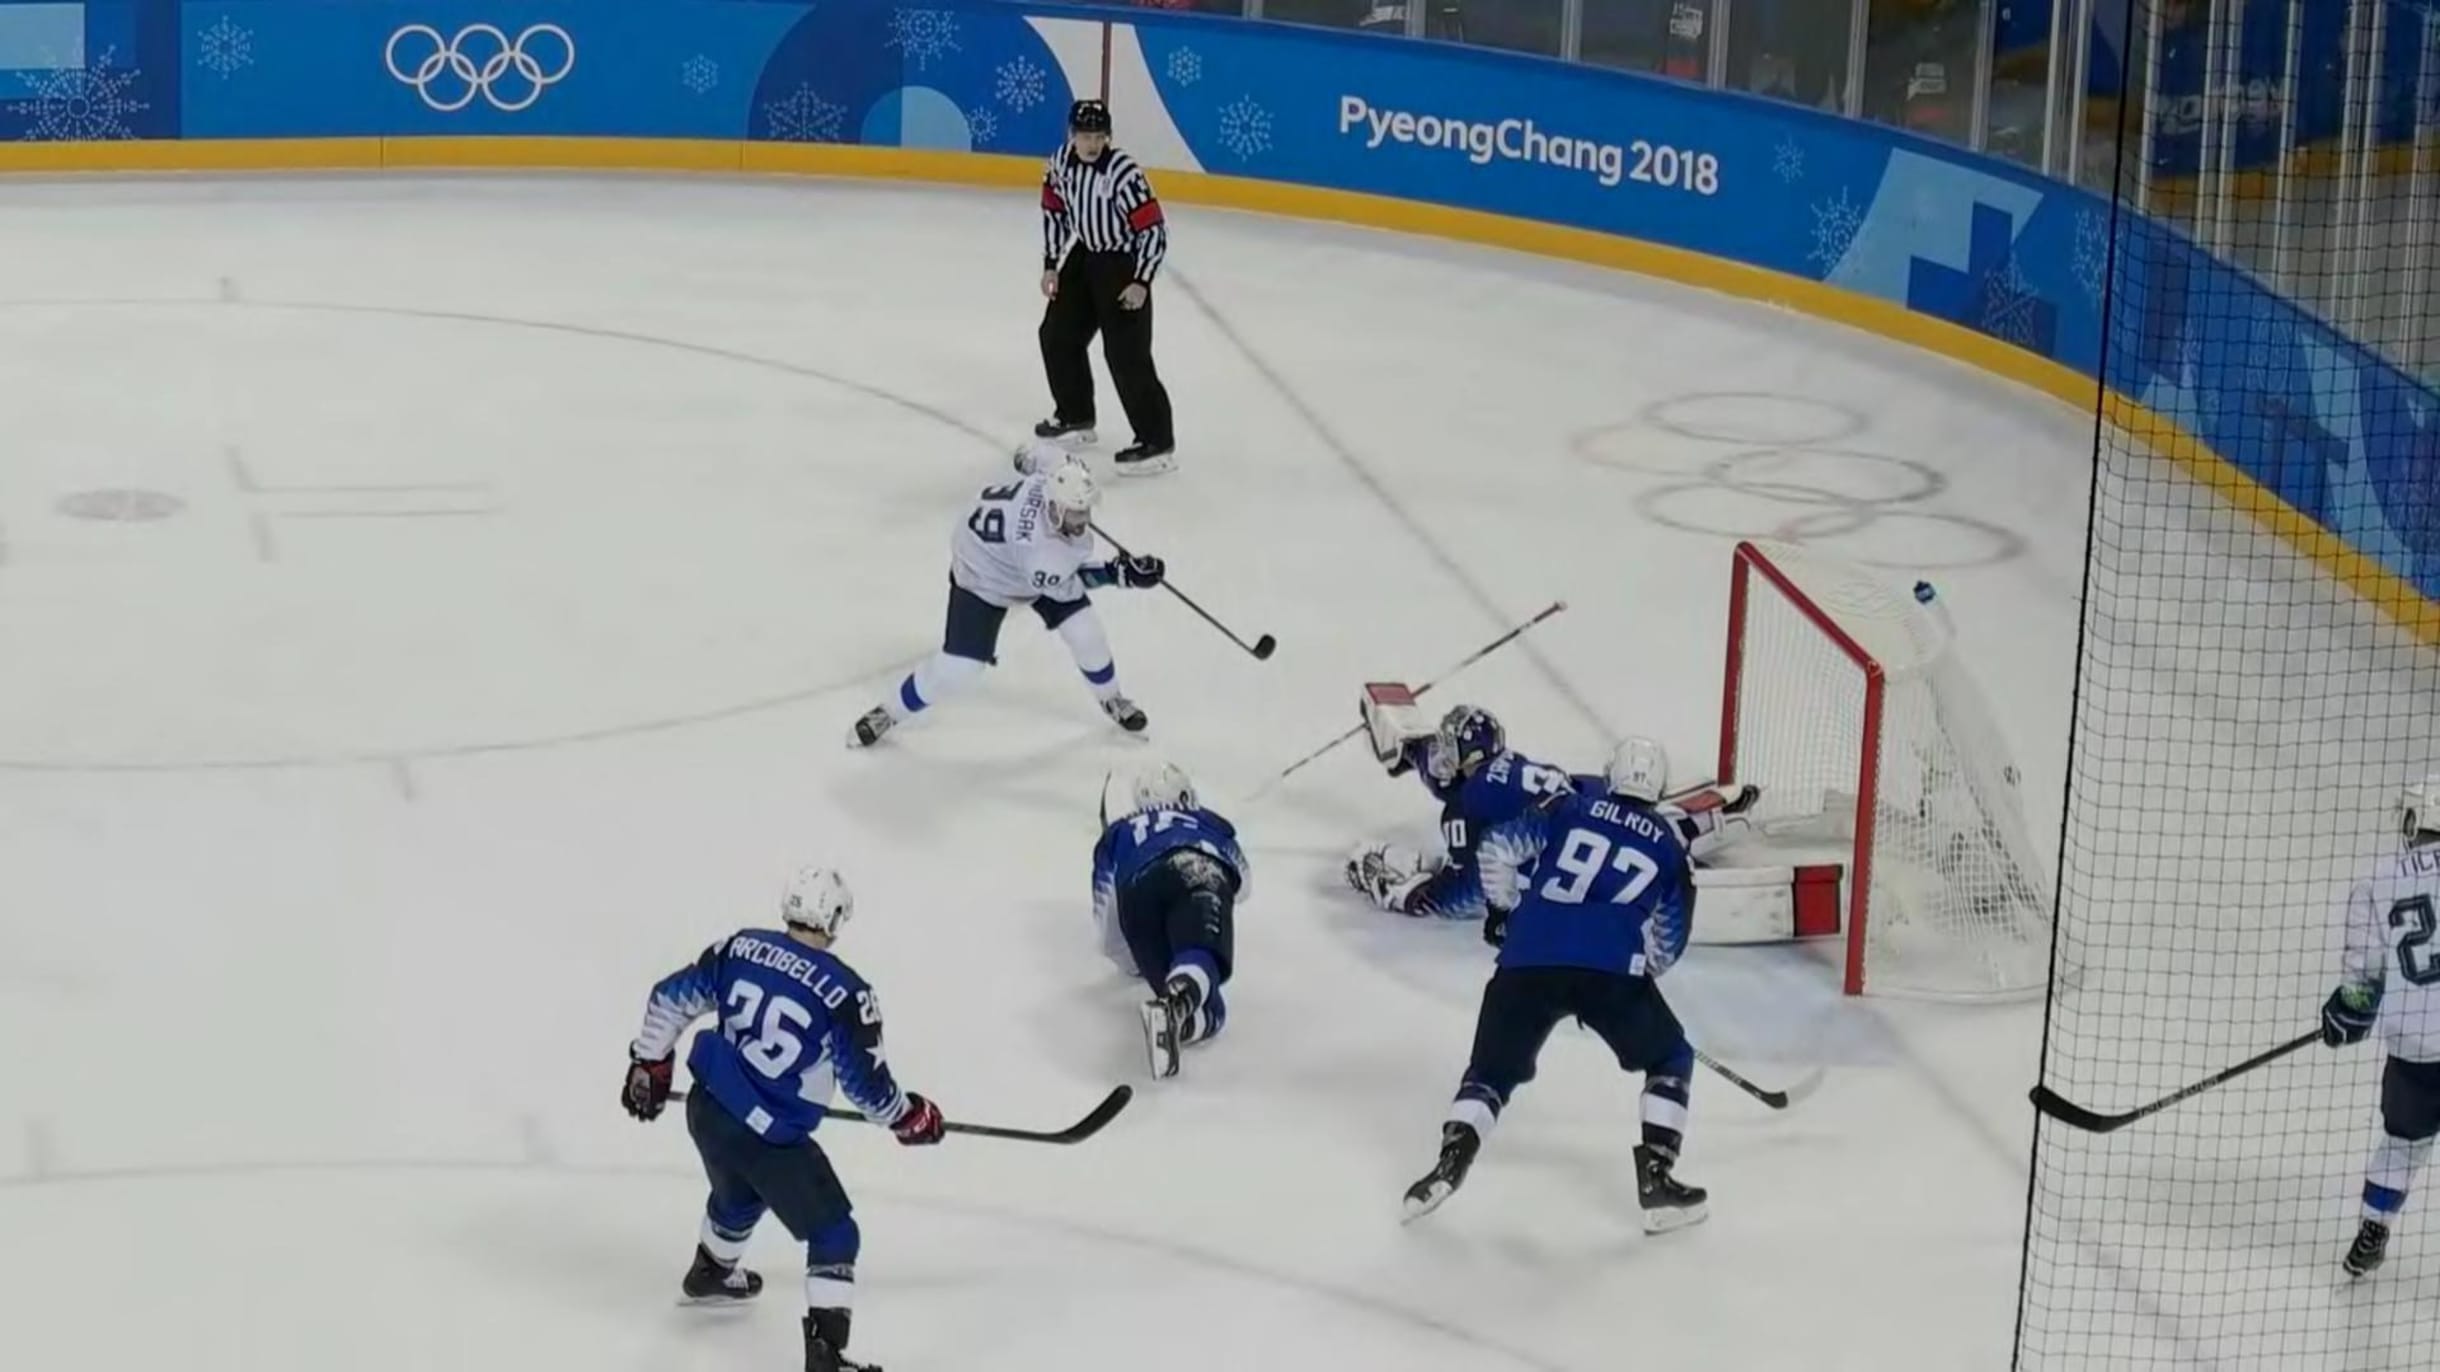 Eishockey bei den Olympischen Spielen Beijing 2022